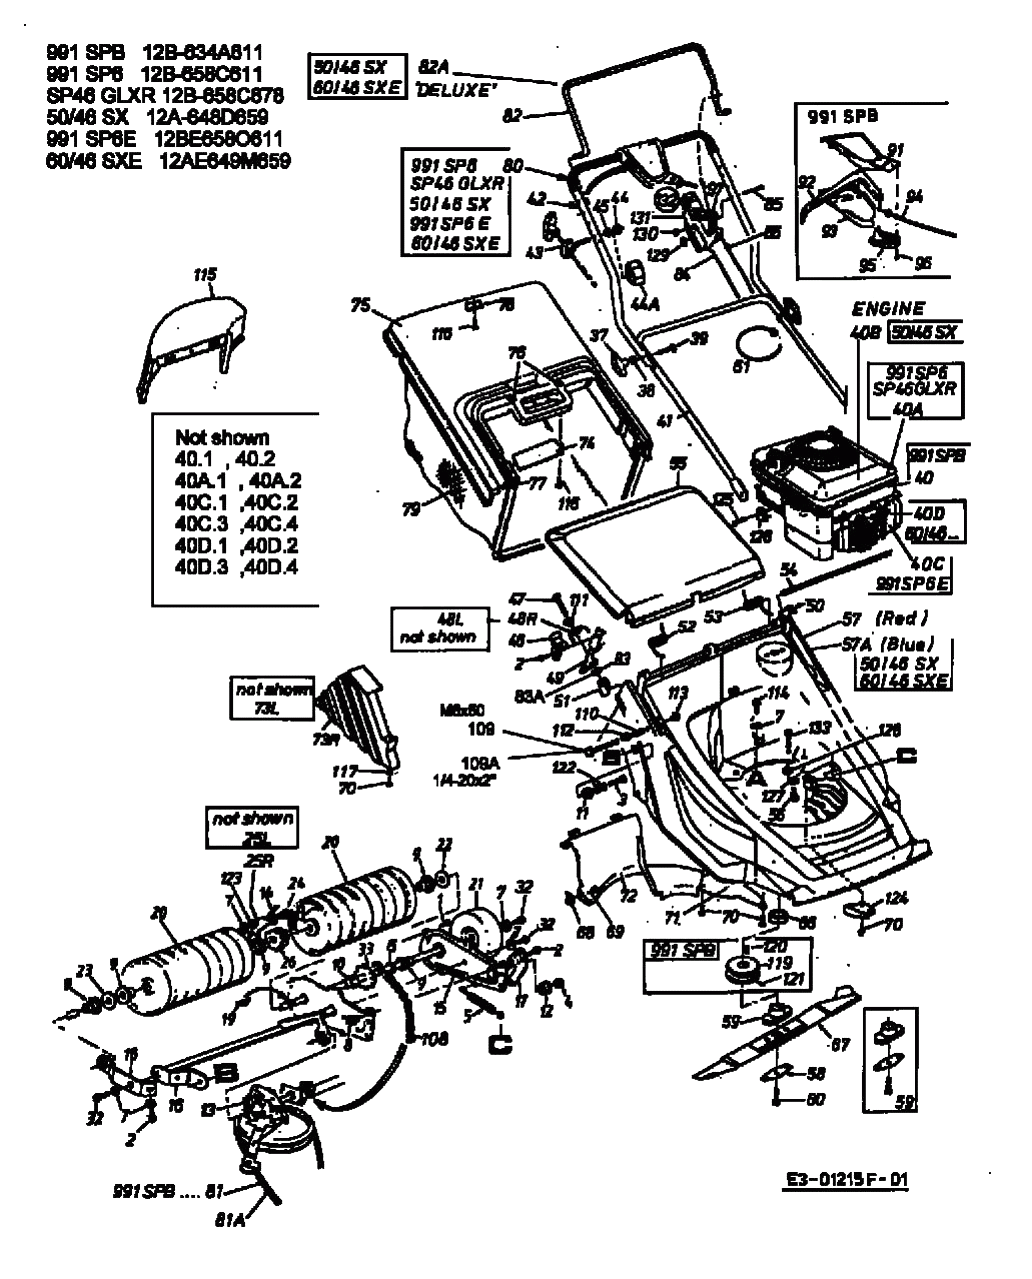 MTD Артикул 12B-658C678 (год выпуска 2002). Основная деталировка